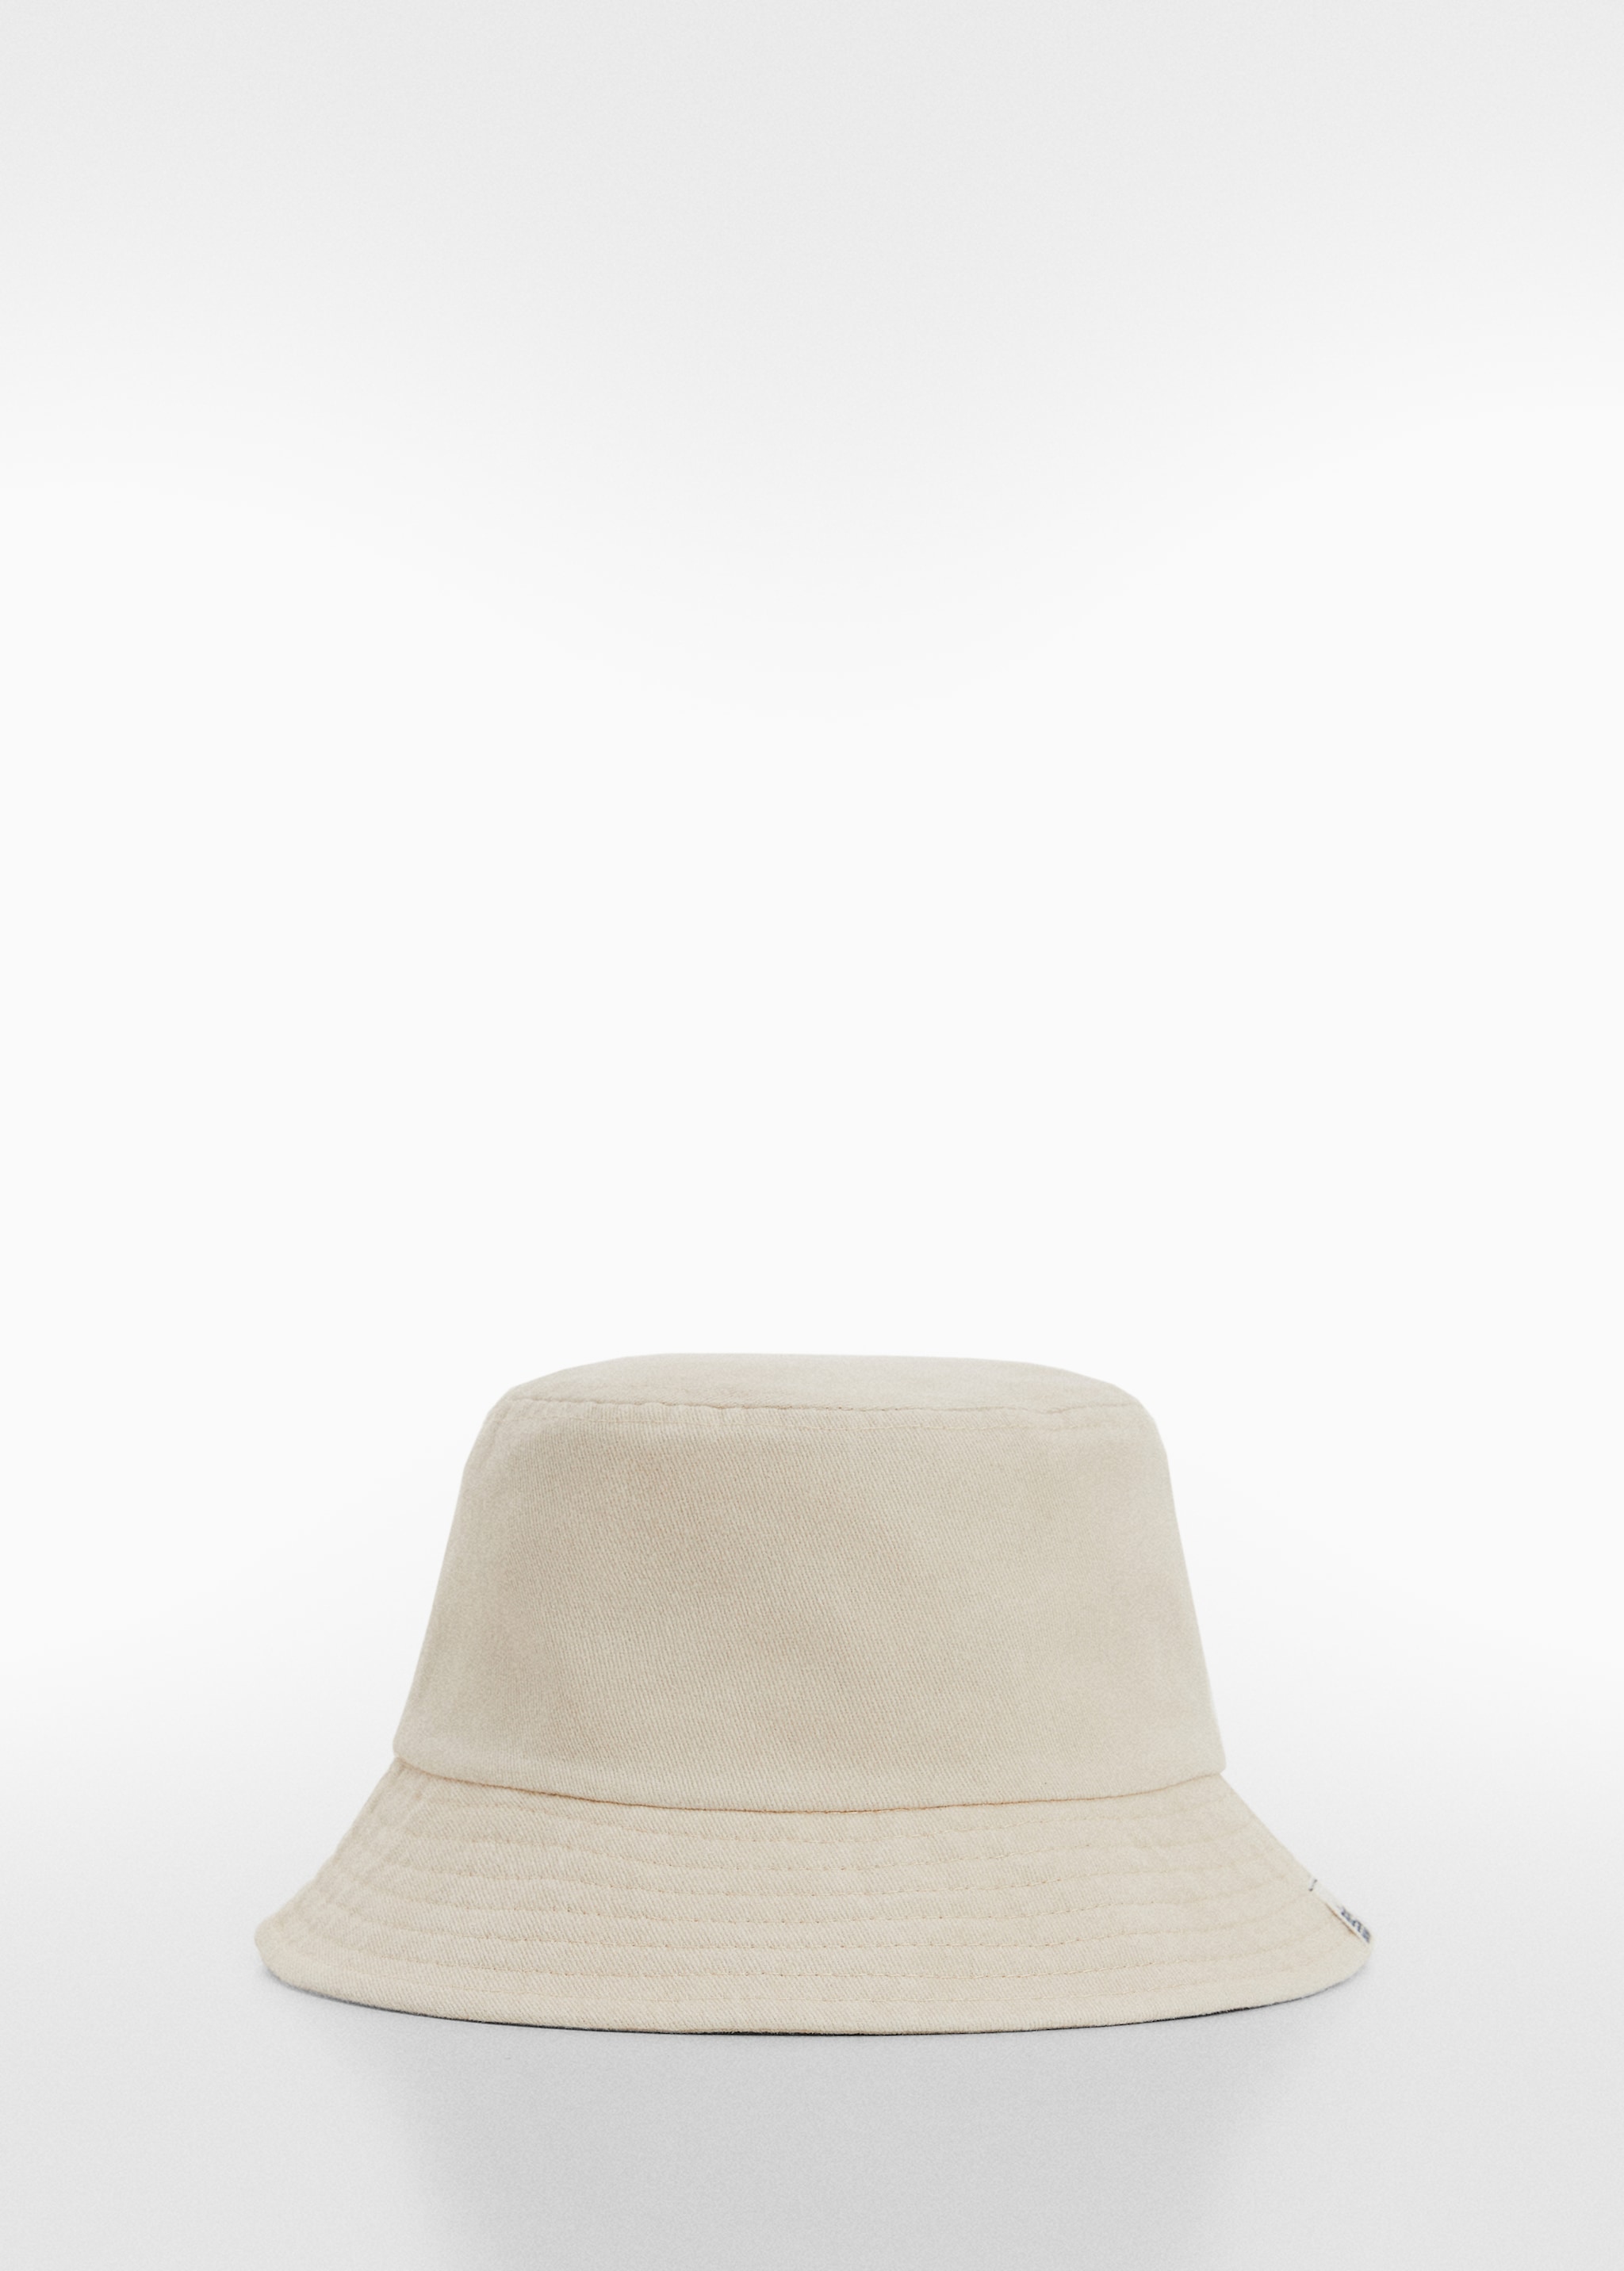 قبعة دلو - منتج دون نموذج